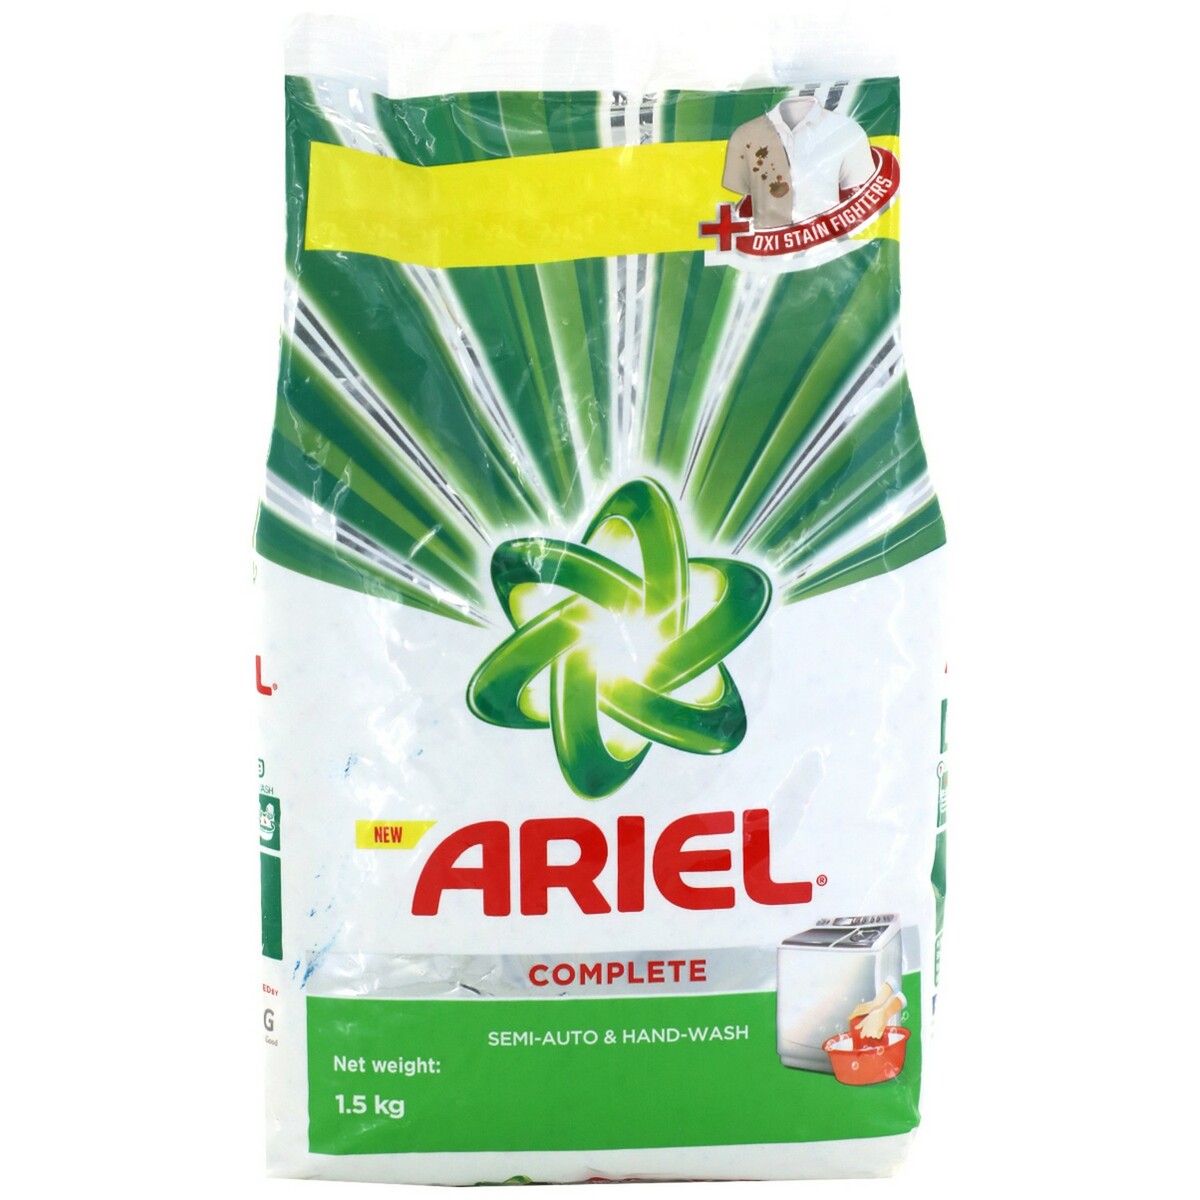 Ariel Detergent 1kg Offer